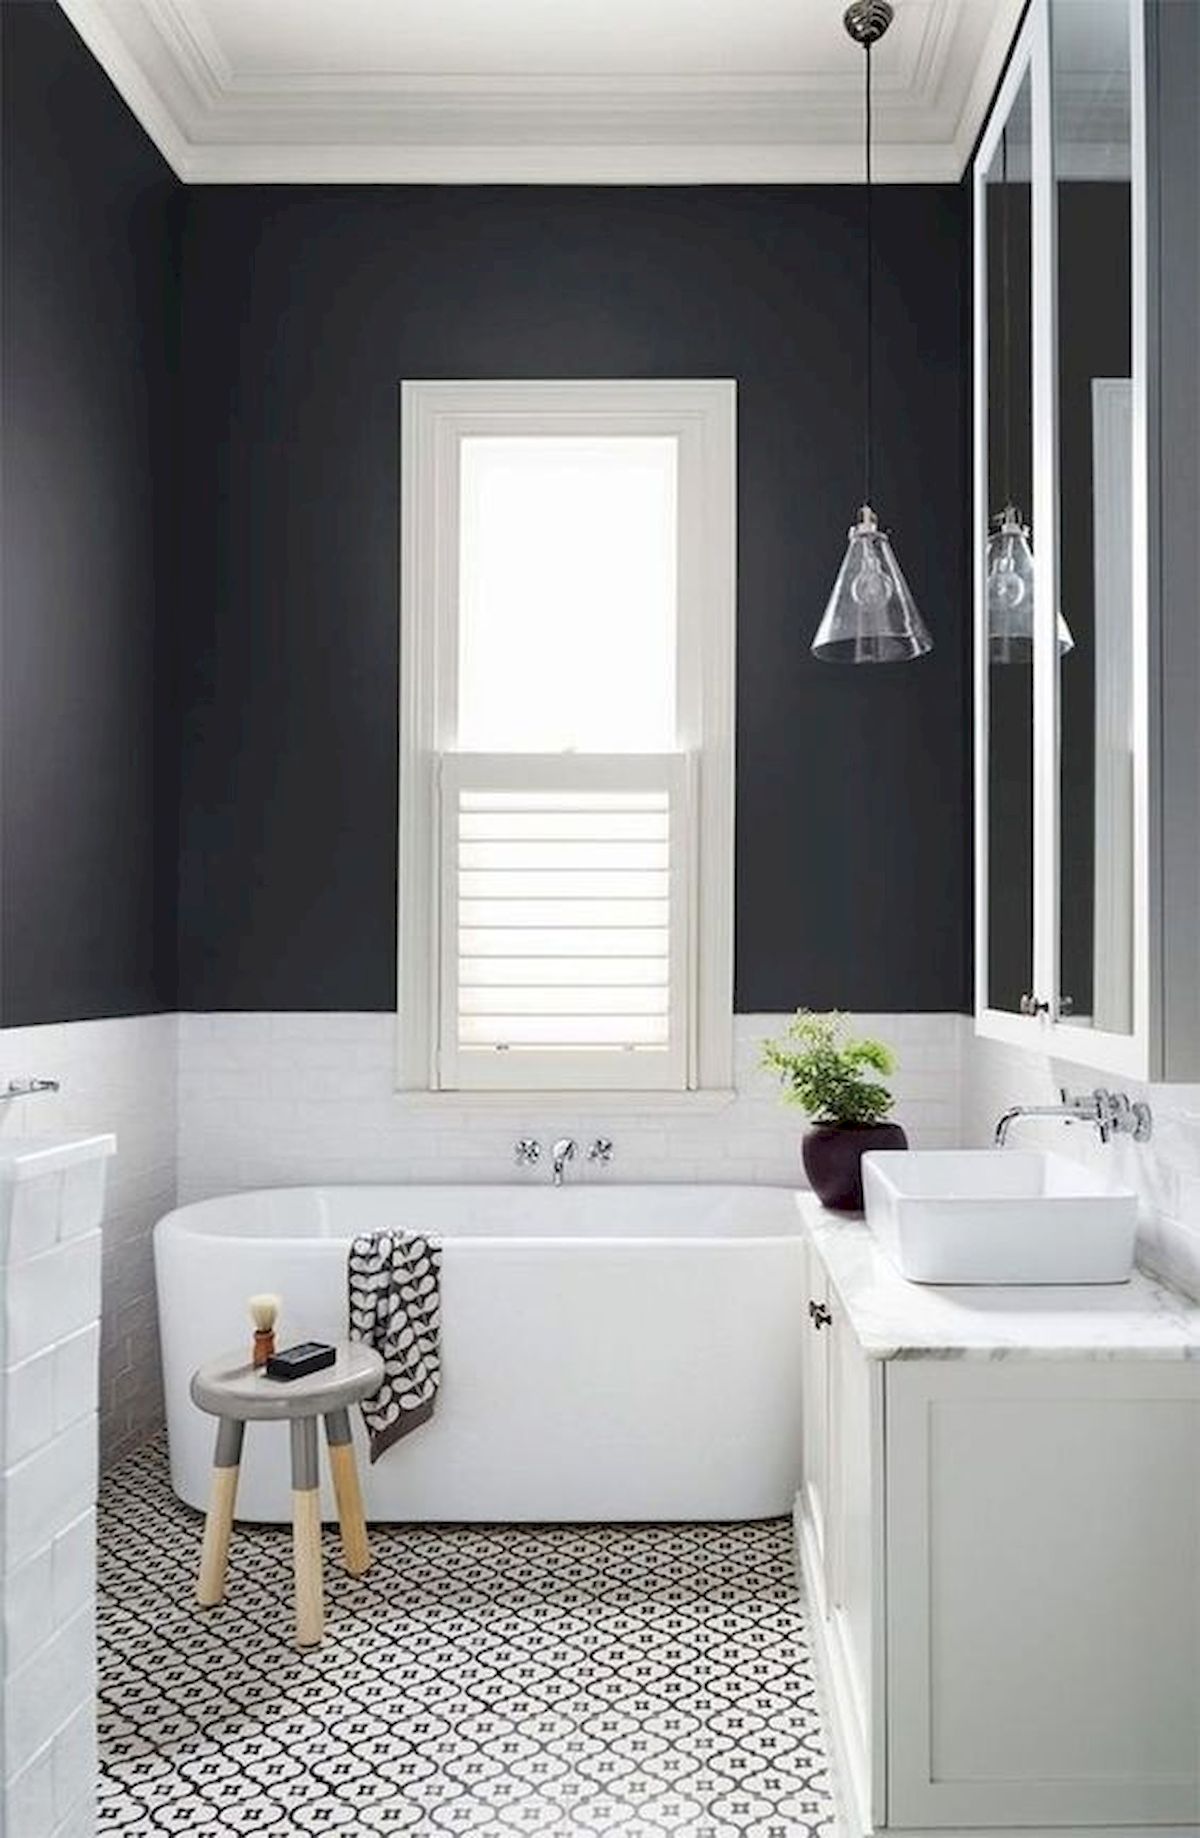 bathroom houzz interior design ideas